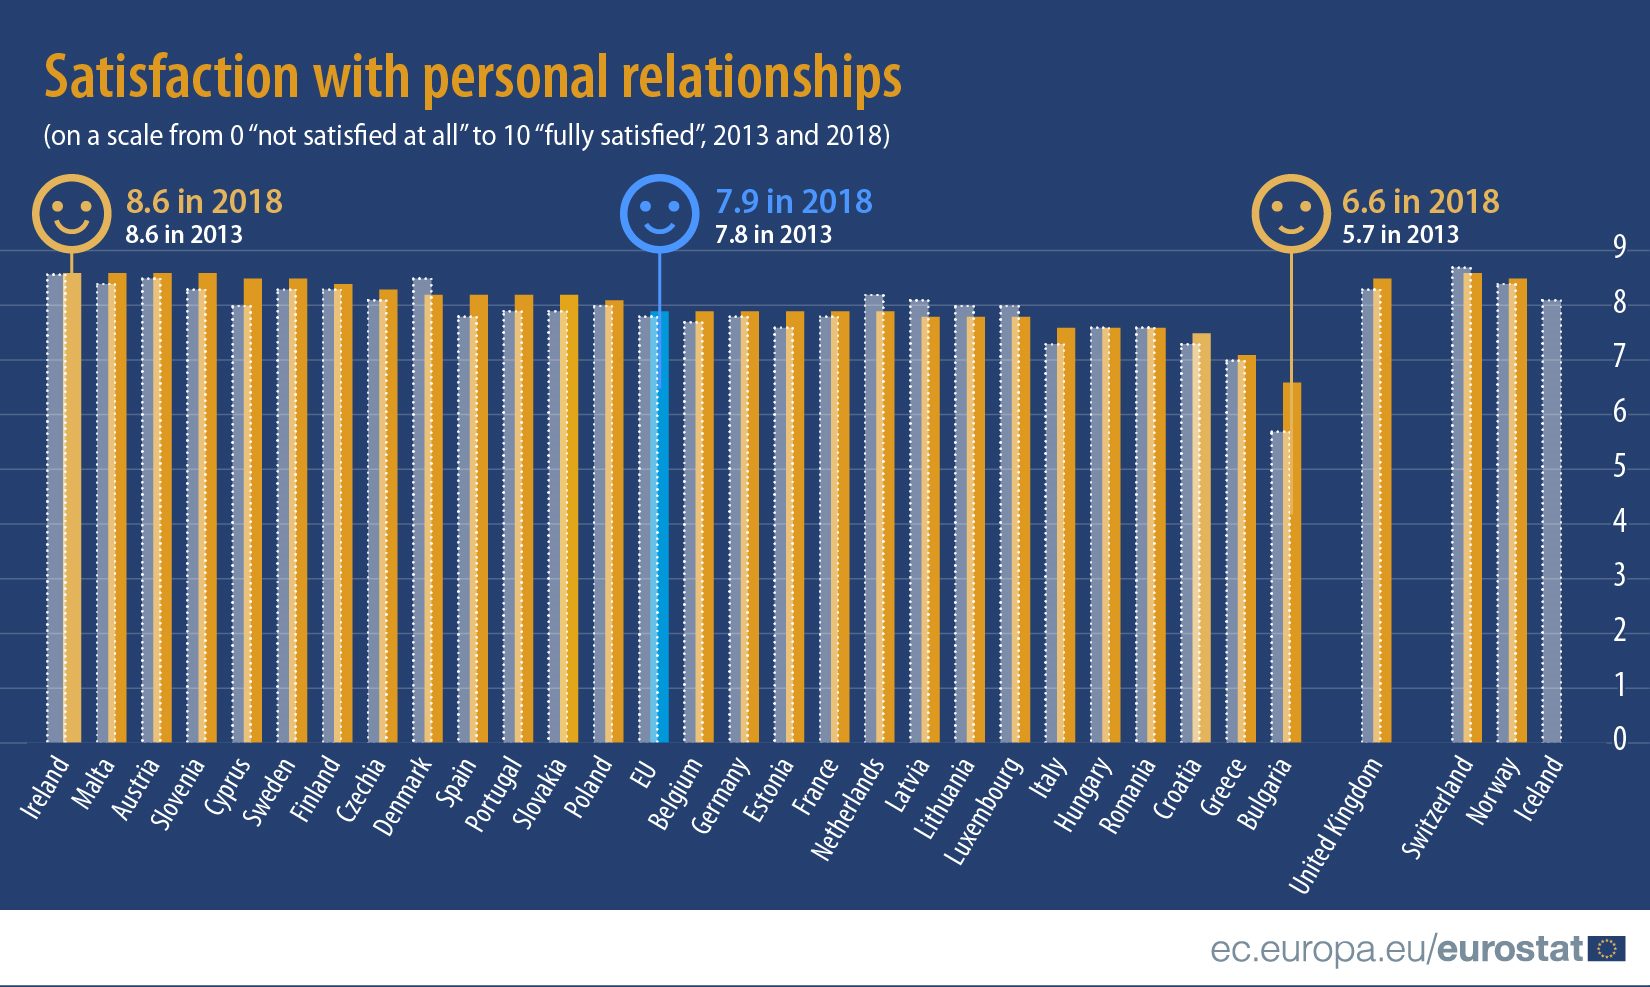 Građani Srbije manje zadovoljni prijateljstvima nego pre nekoliko godina 2